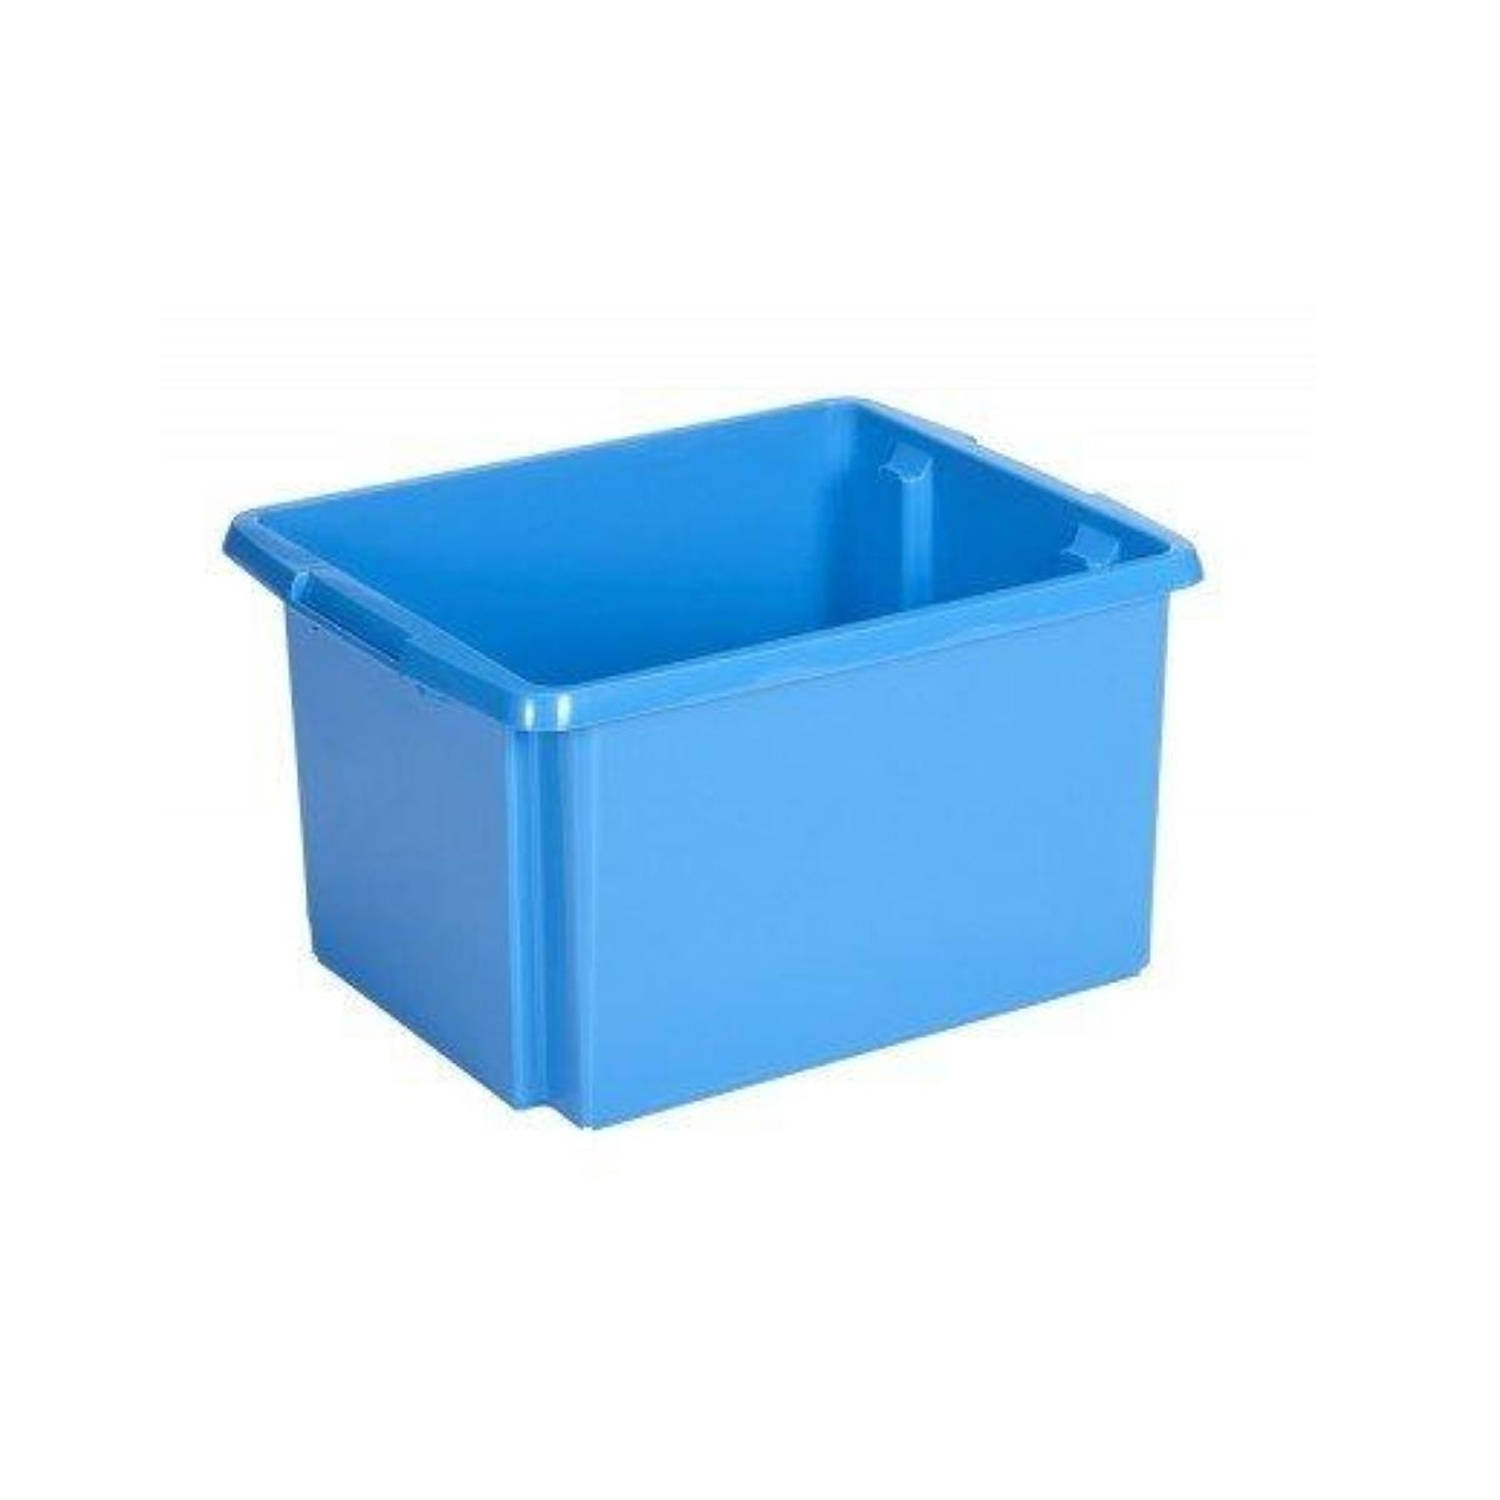 Sunware Nesta box blauw 32ltr